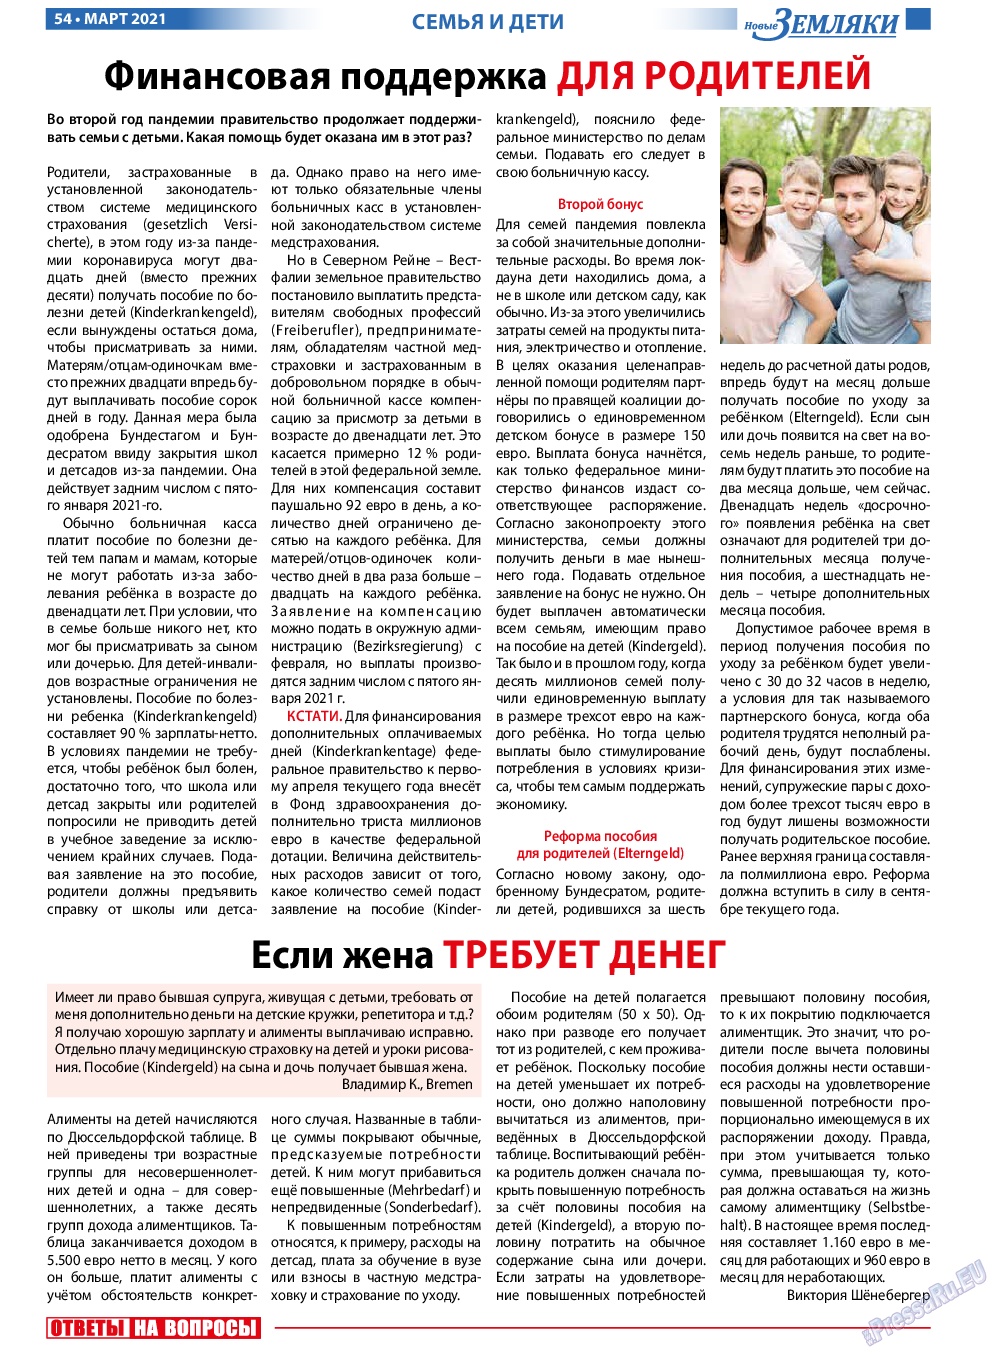 Новые Земляки, газета. 2021 №3 стр.54